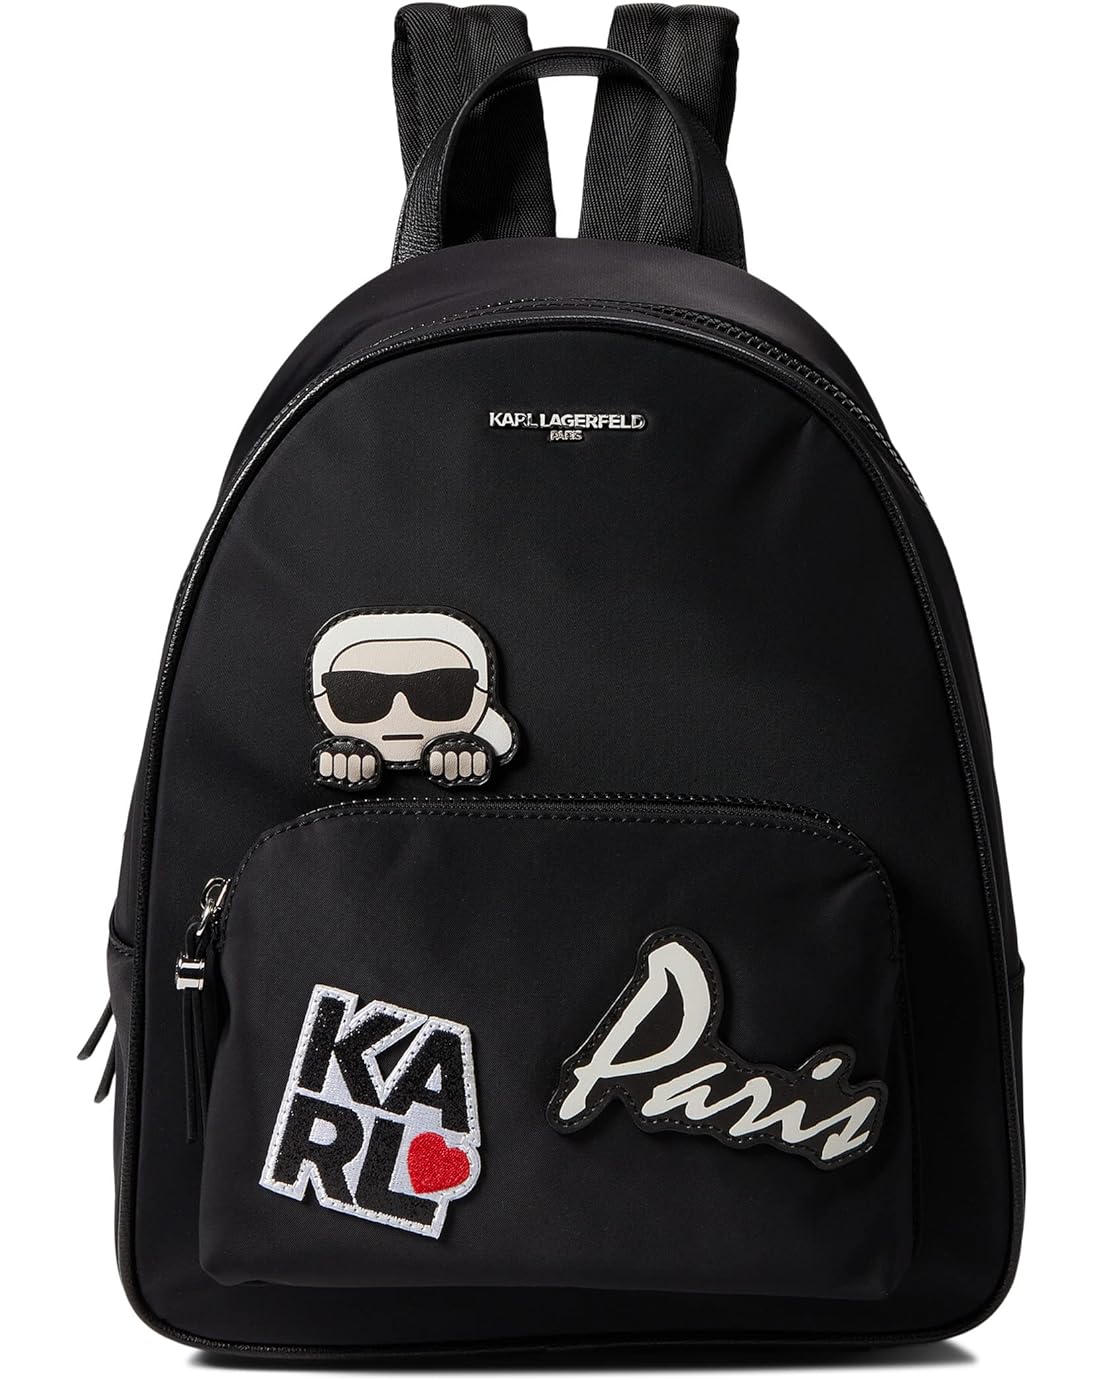 Karl Lagerfeld Paris Khloe Backpack